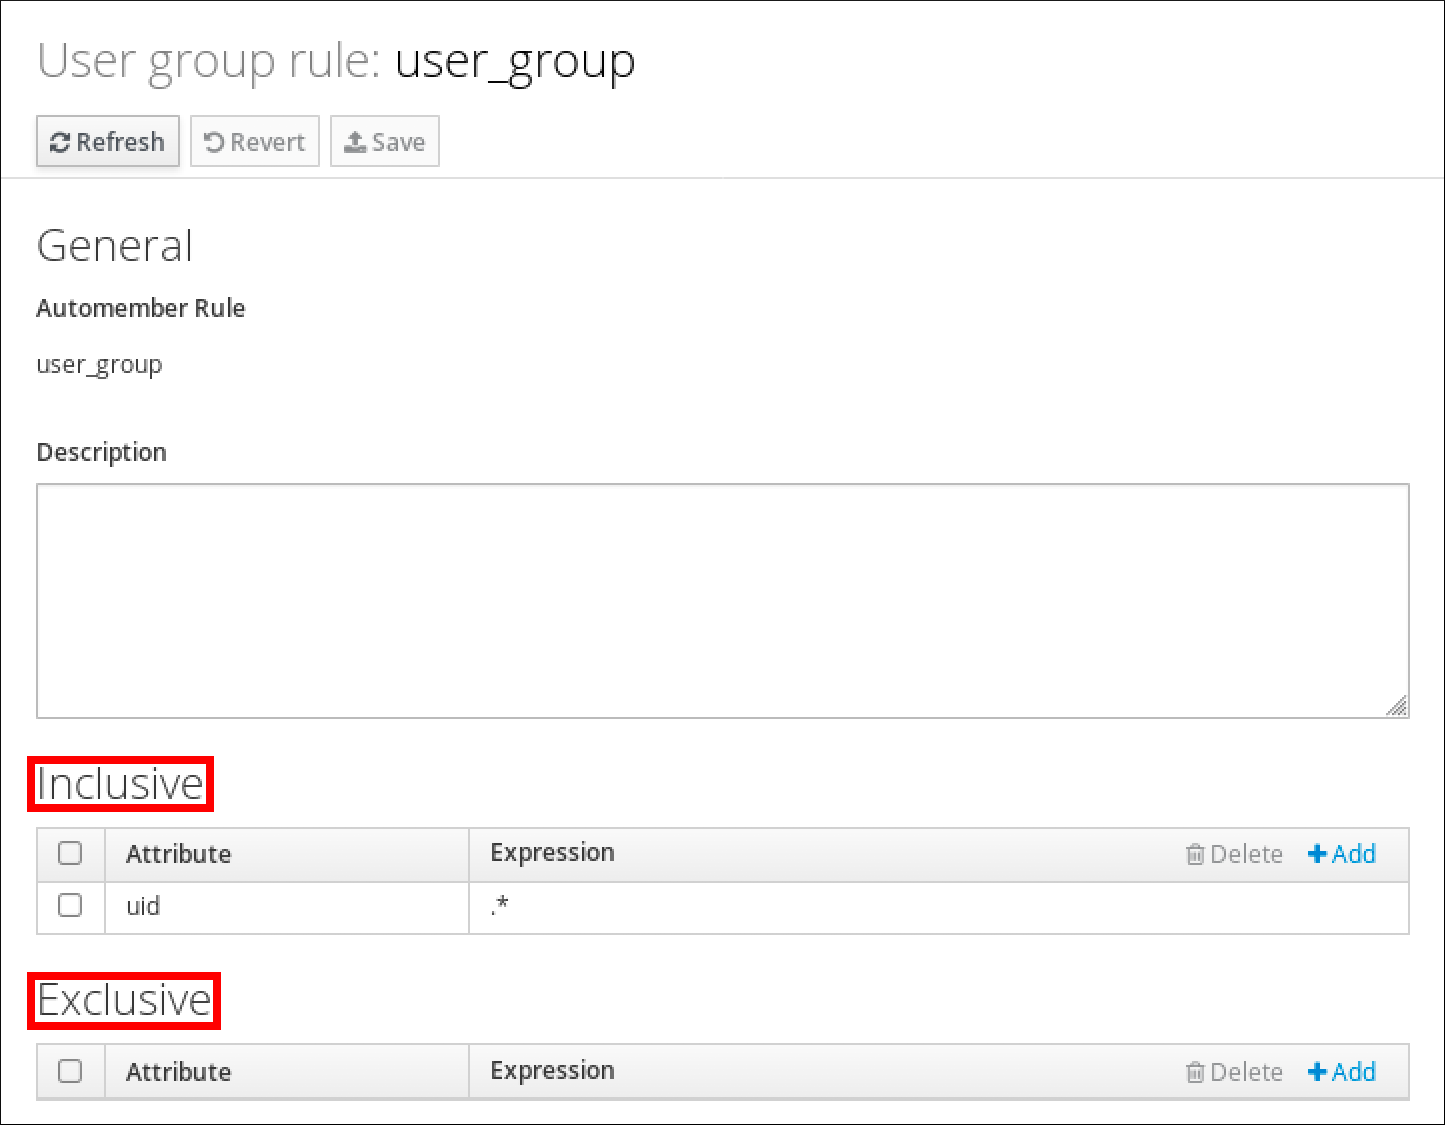 ユーザーグループルール "user_group" の詳細のスクリーンショット。 General のセクションがあり、そこには Automember ルールの名前と Description セクションが表示されます。 下部には Inclusive セクションがあり、その中のテーブルには Attribute と Expression のラベルが付いたエントリーが表示されています。 この表には、エントリーが 1 つあり、属性に uid 、式に .* が入力されています。一番下には、Inclusive テーブルの構造と同じテーブルを含む Exclusive セクションがありますが、エントリーはありません。